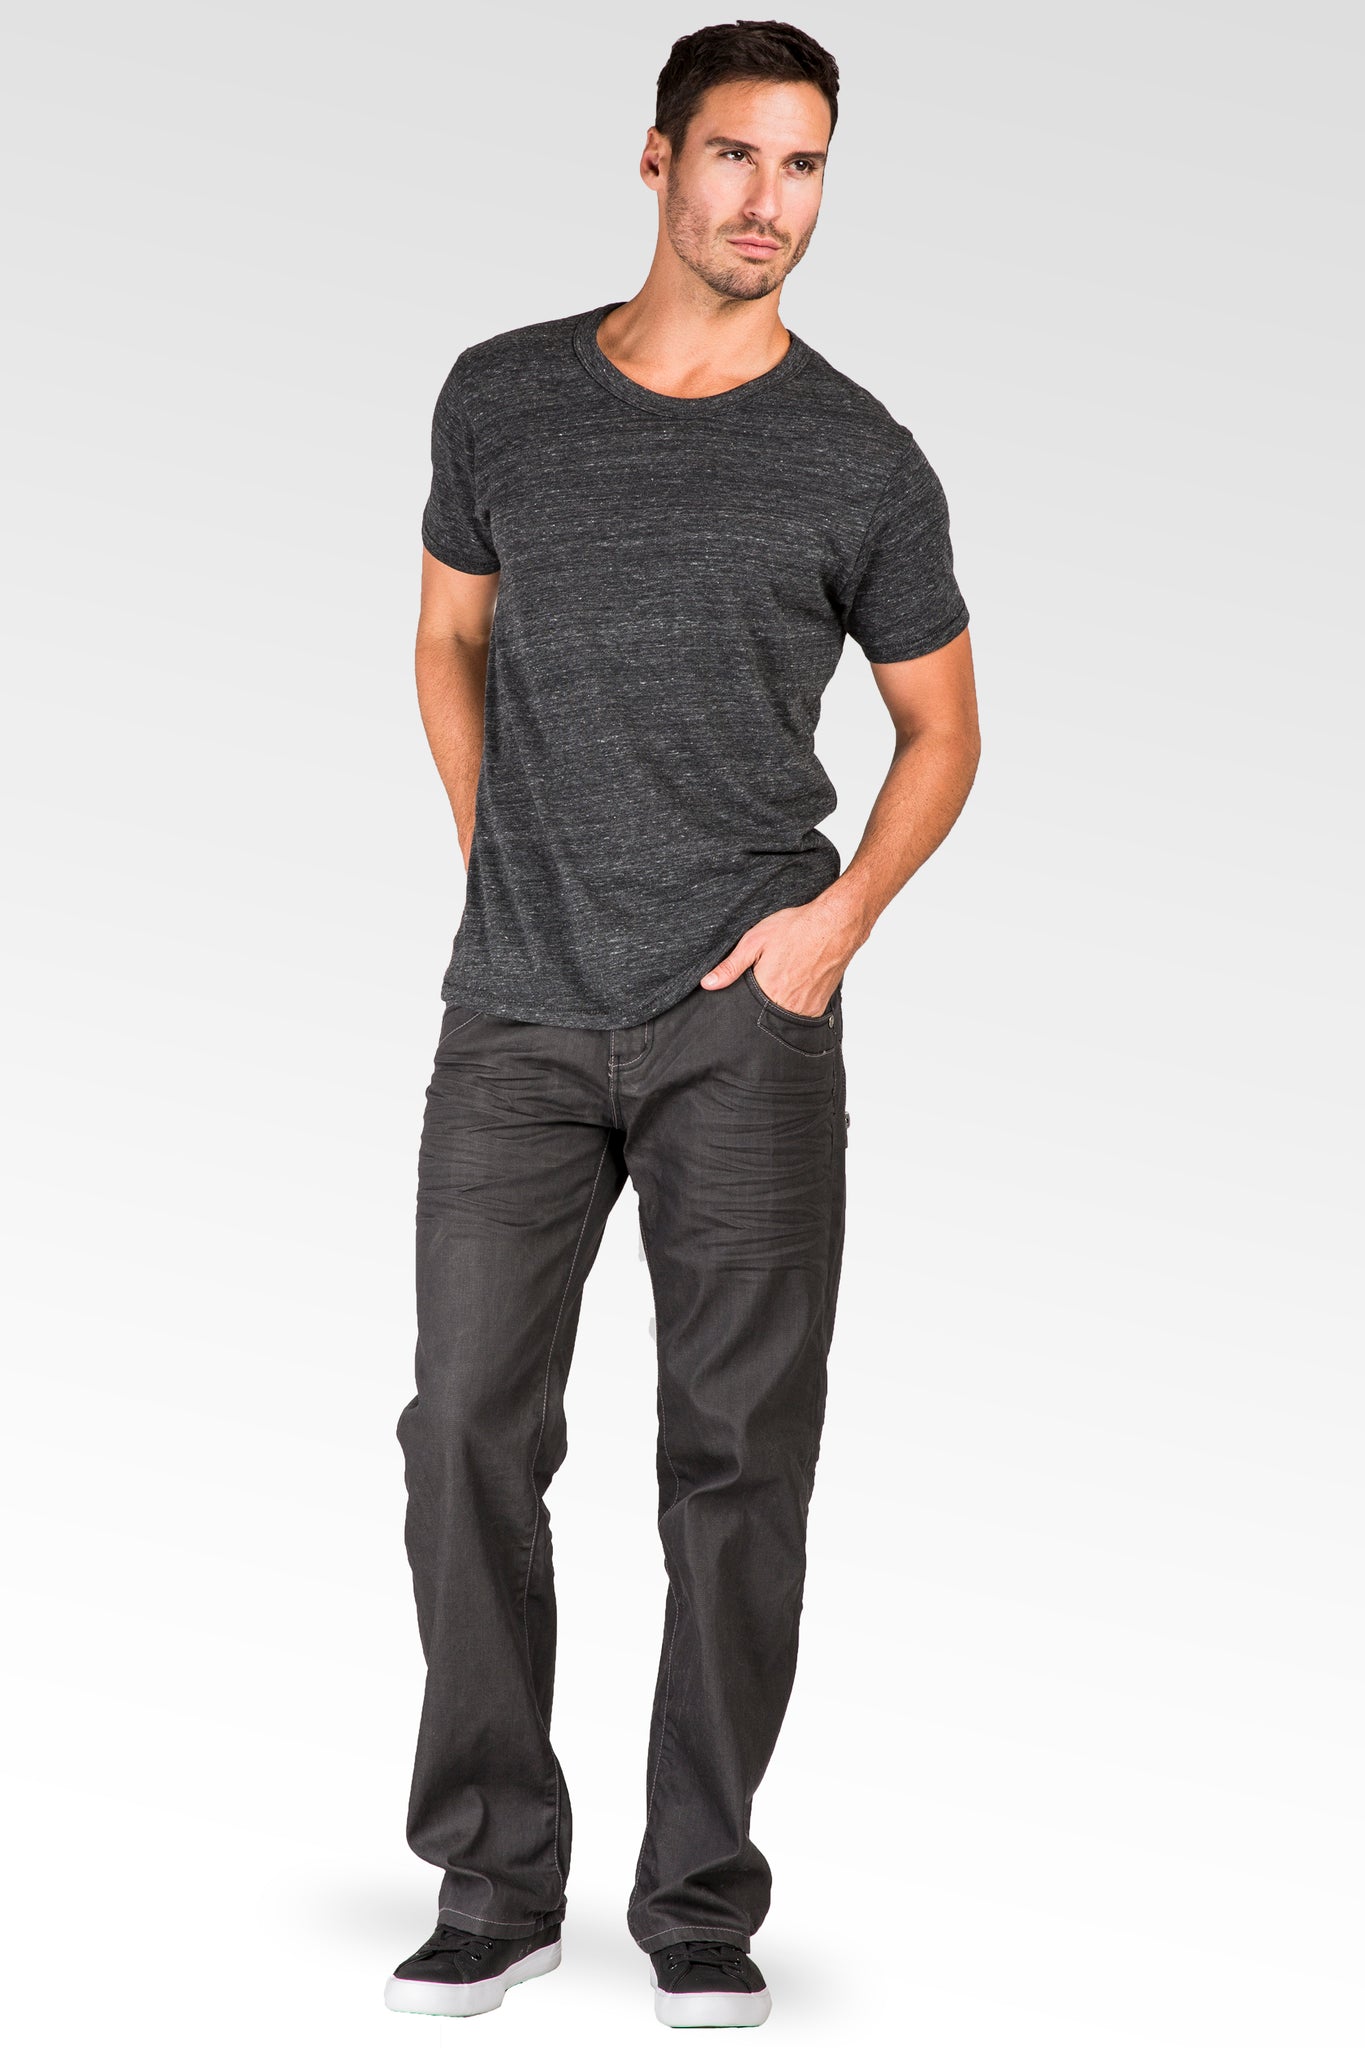 Men's Relaxed Bootcut Premium Coating Black Denim Jeans Zipper Trim Pocket Wrinkle Whisker